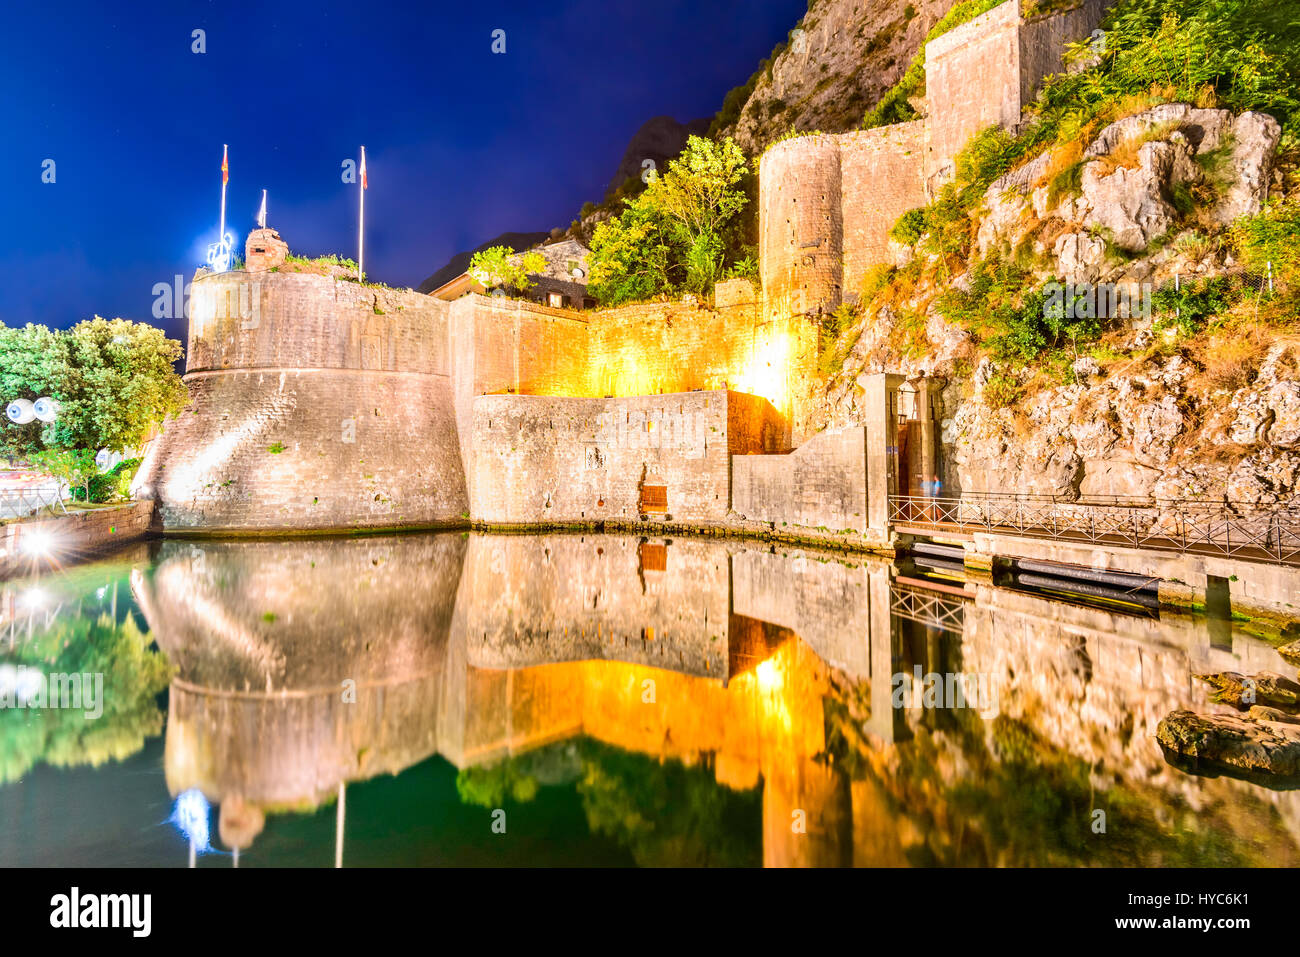 Baia di Kotor, Montenegro. La fortezza veneziana di Kotor e fiume scurda. torre e parete, monte Lovcen in background. Foto Stock